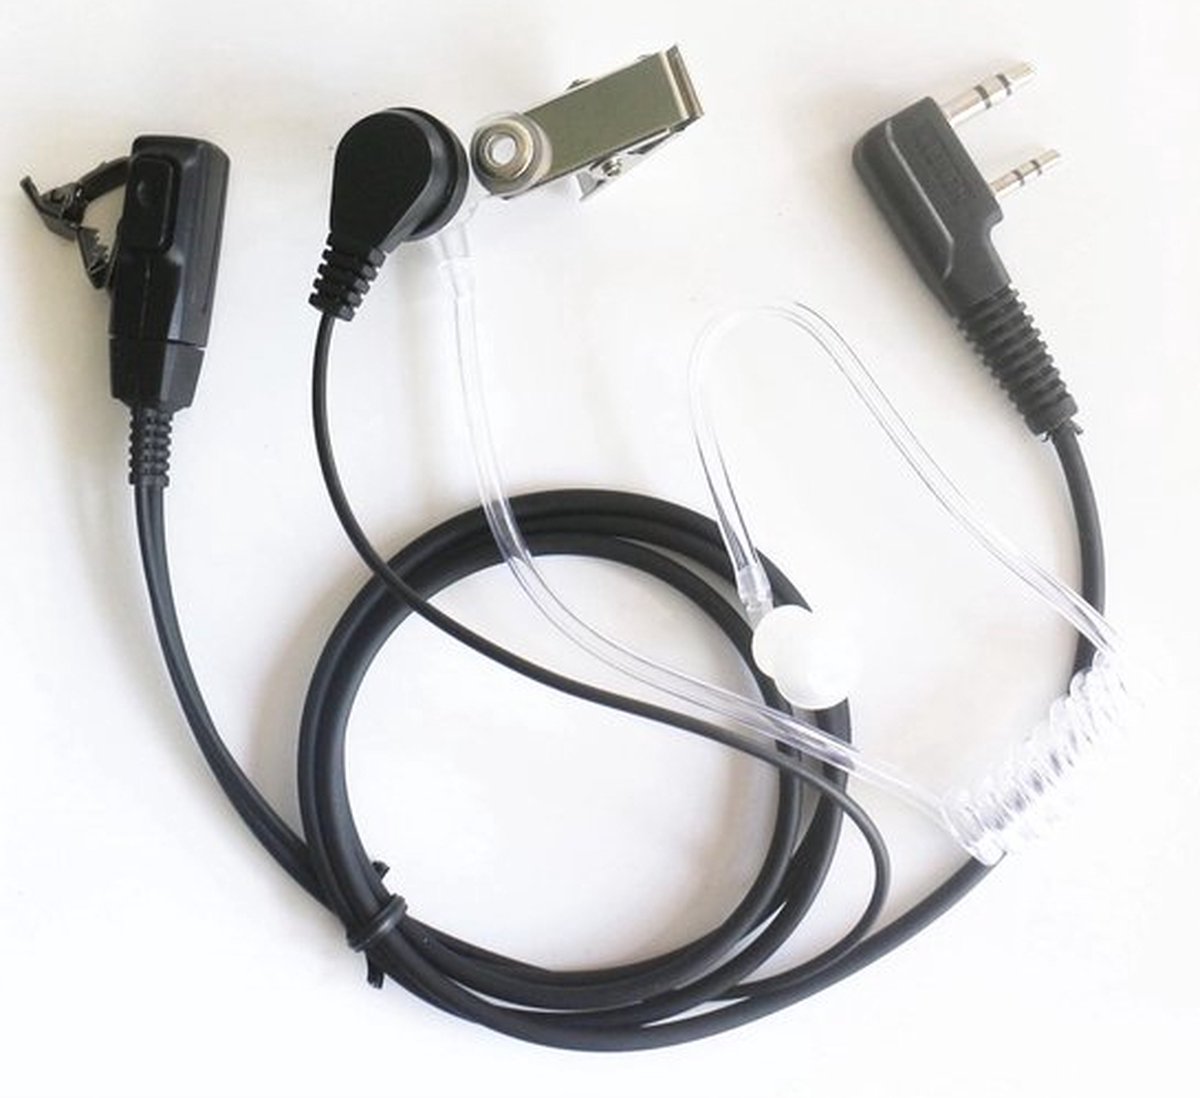 KENWOOD - Casque pour micro-écouteur pour talkie walkie (Neuf